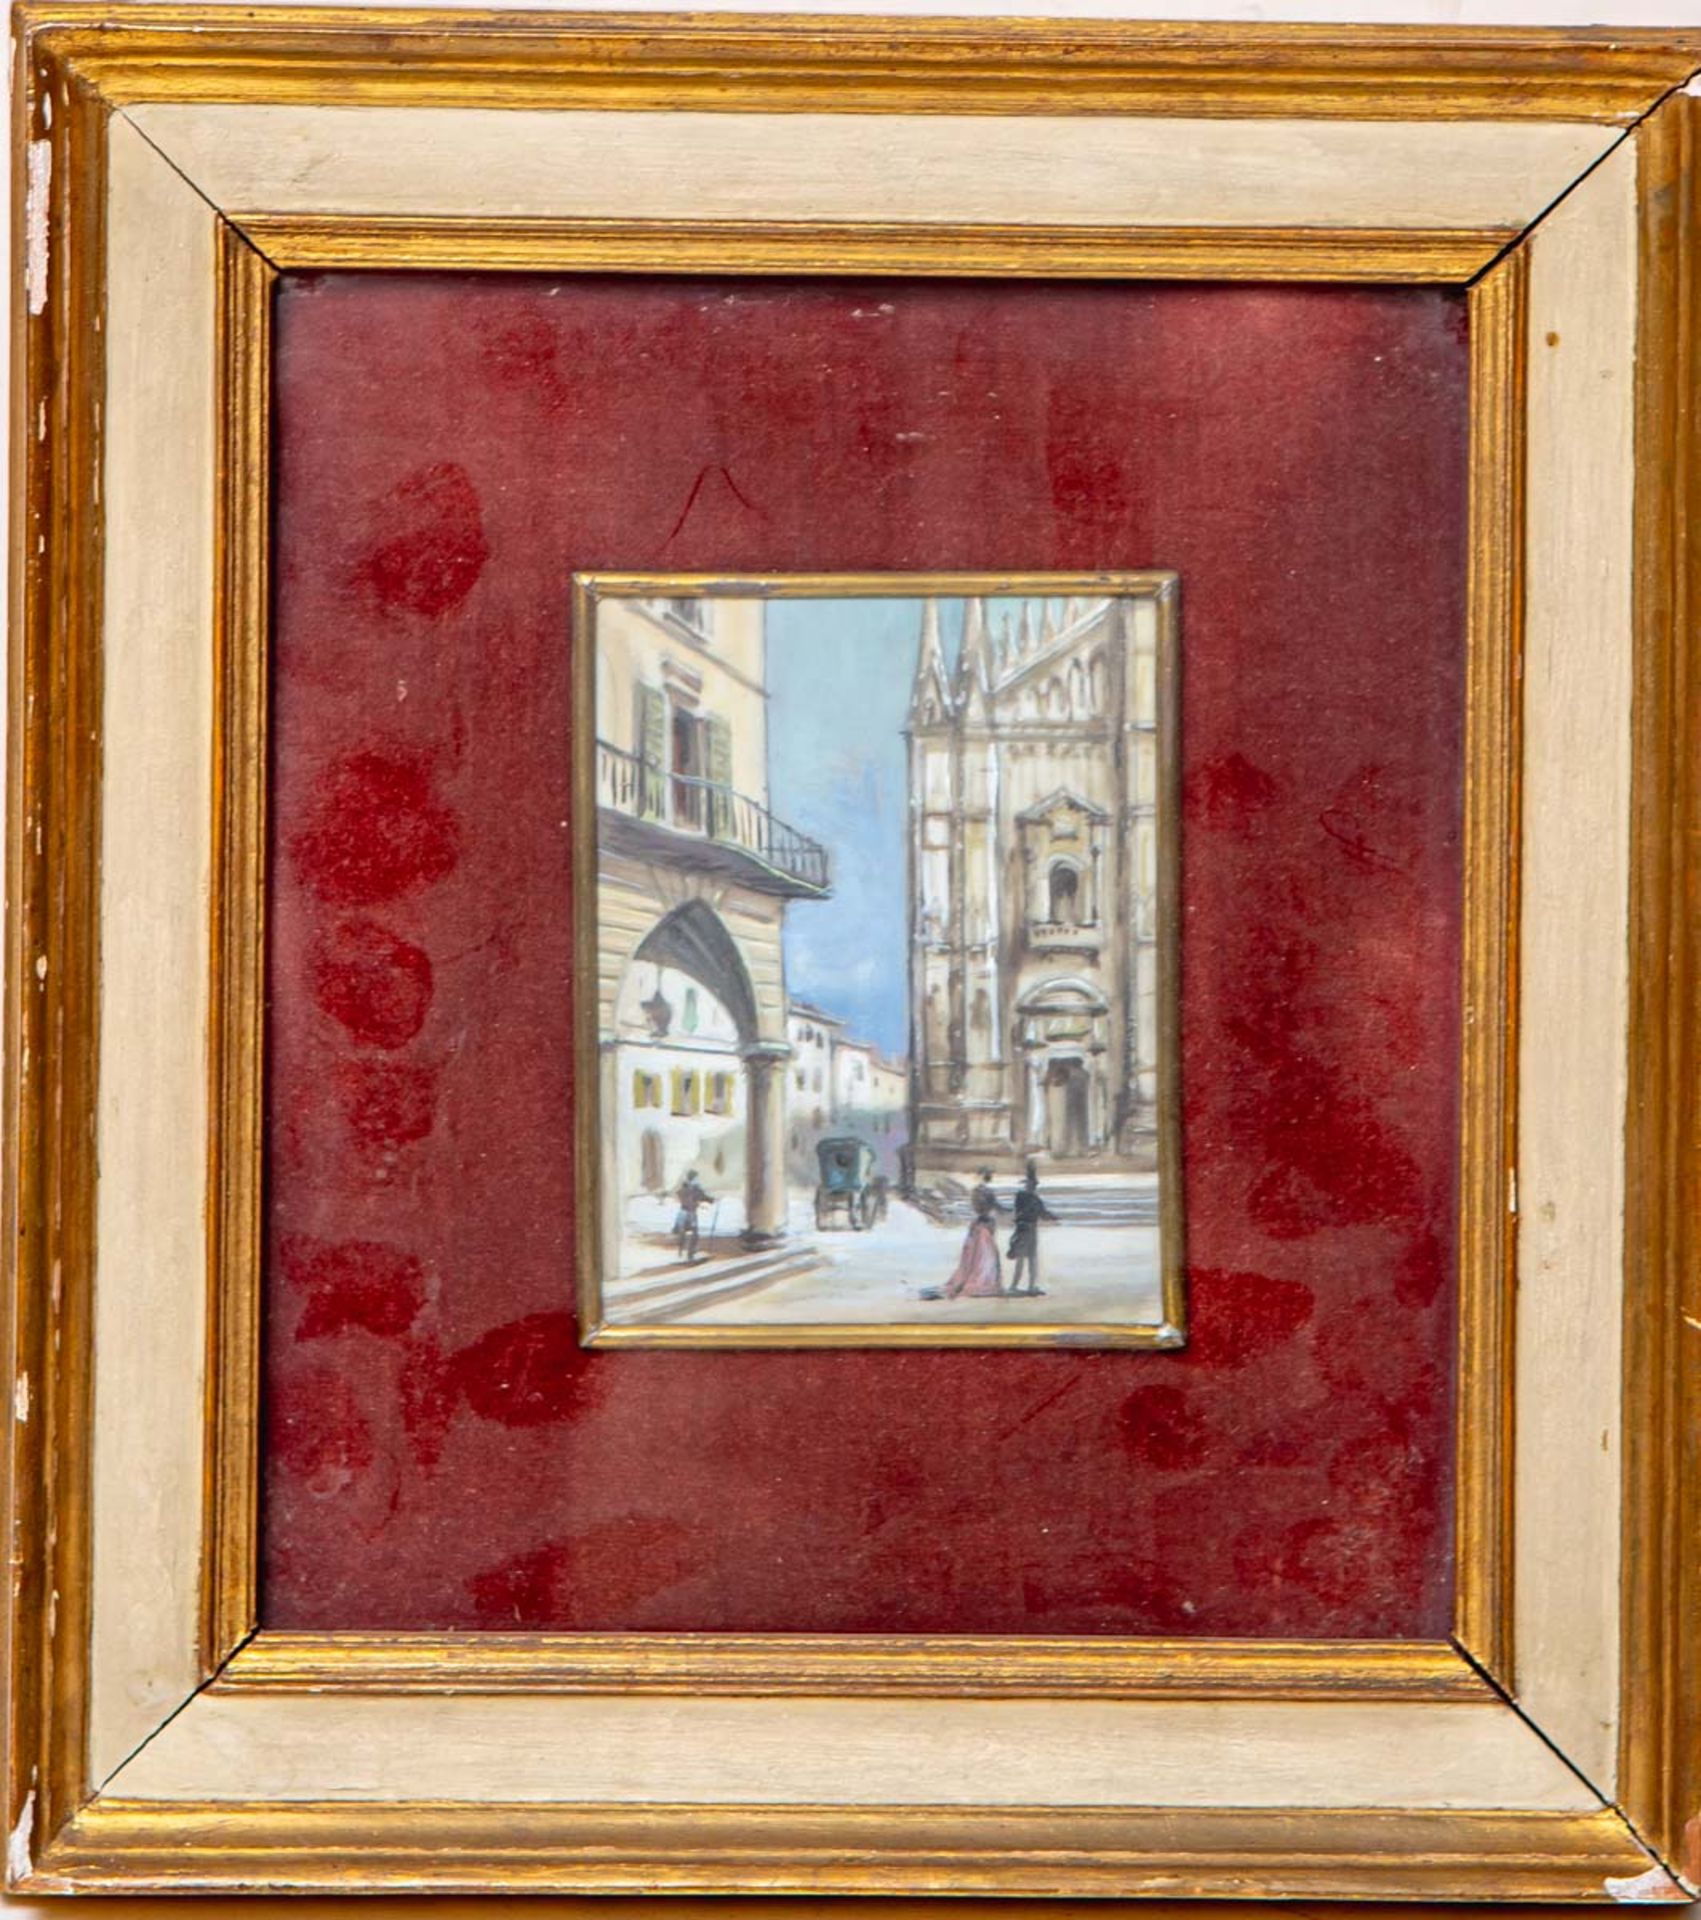 KünstlerIn unbekannt (19. Jh.), Miniaturgemälde m. Flanierszene vor einer Kathedrale